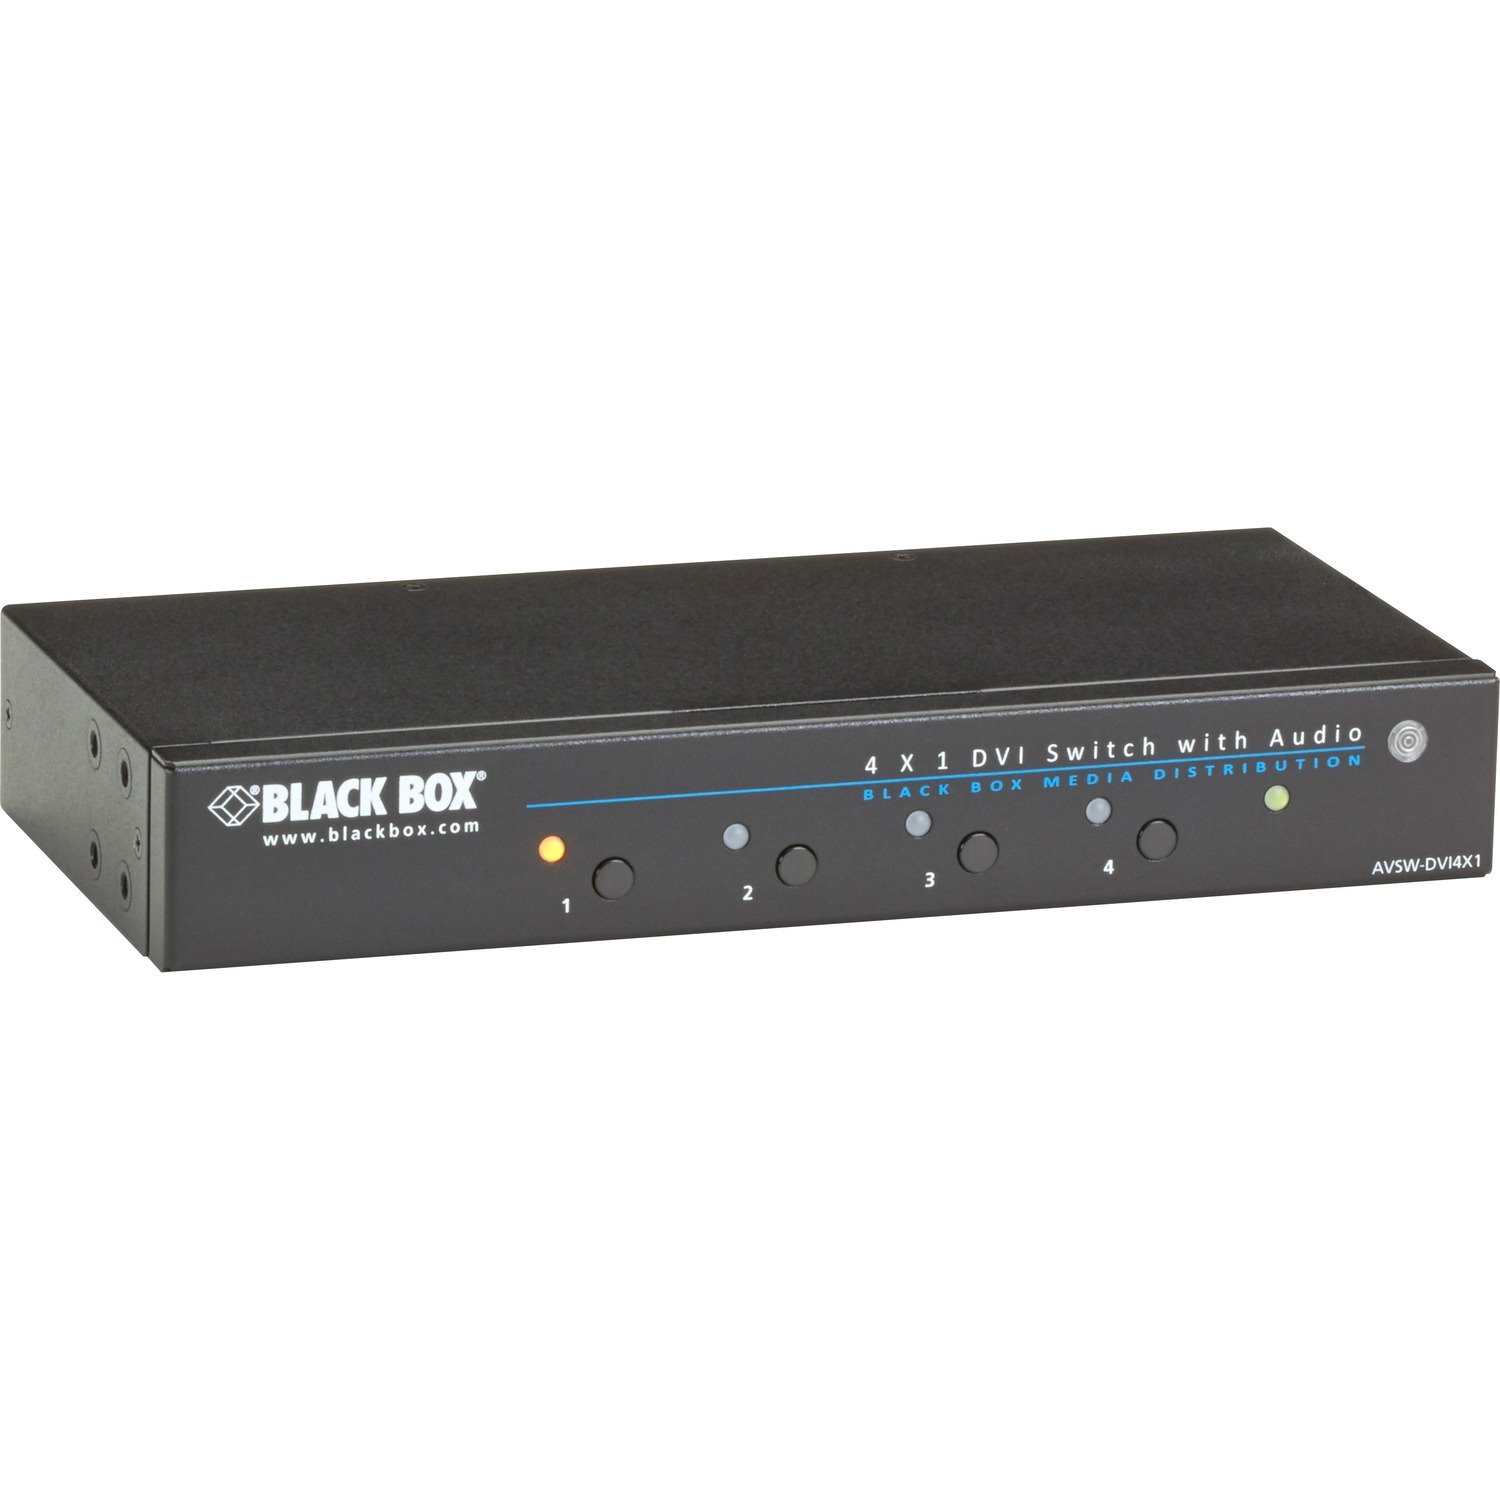 Black Box 4 x 1 DVI Switch with Audio